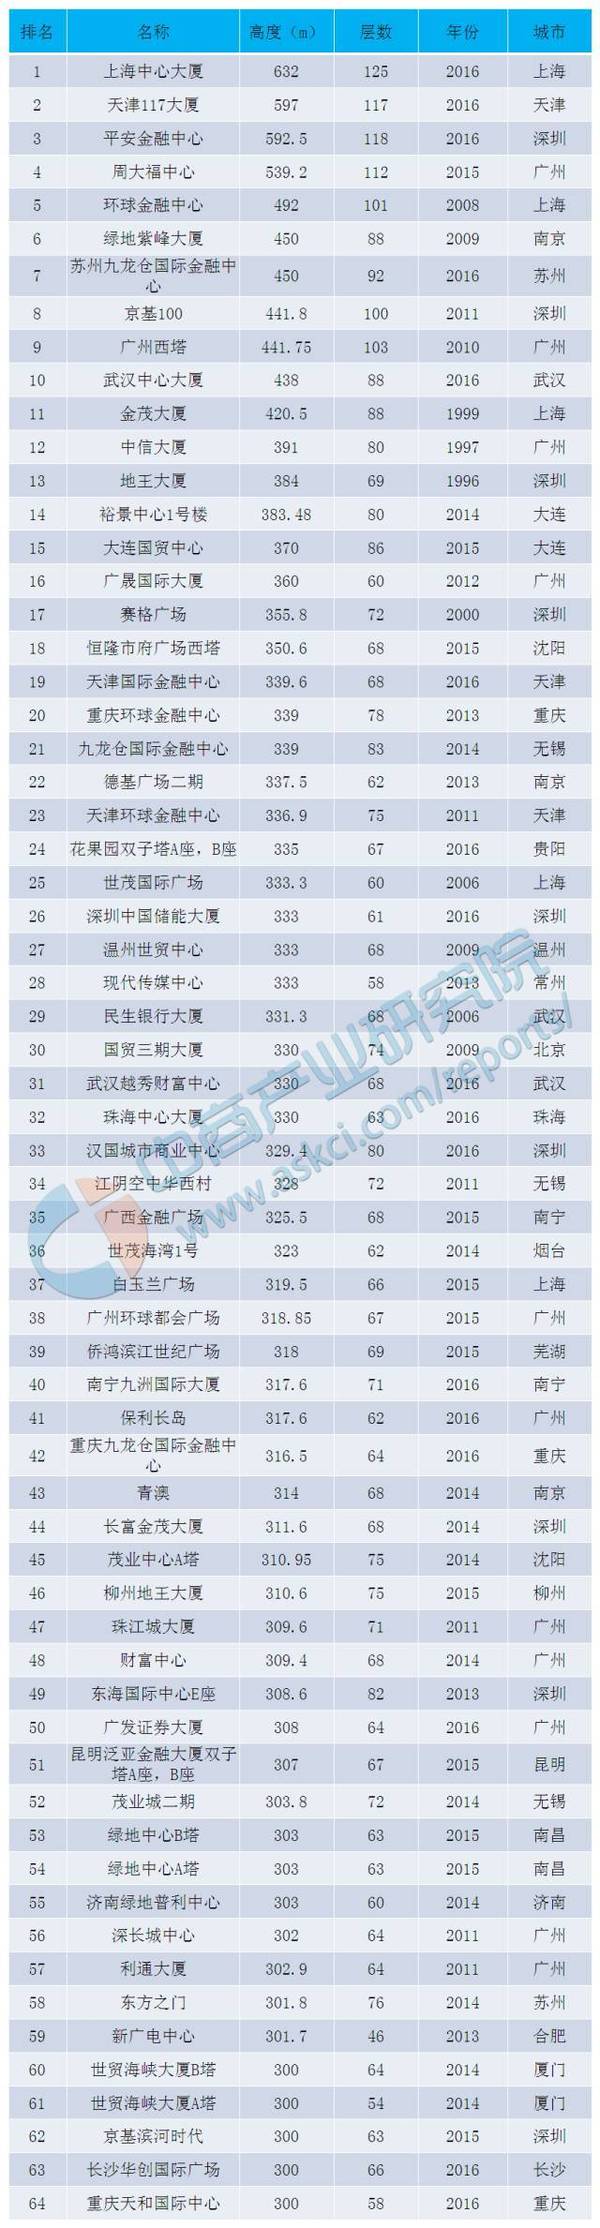 "2016中国大陆300米以上高楼排行榜"来看,排名前十的大楼多集中在上海